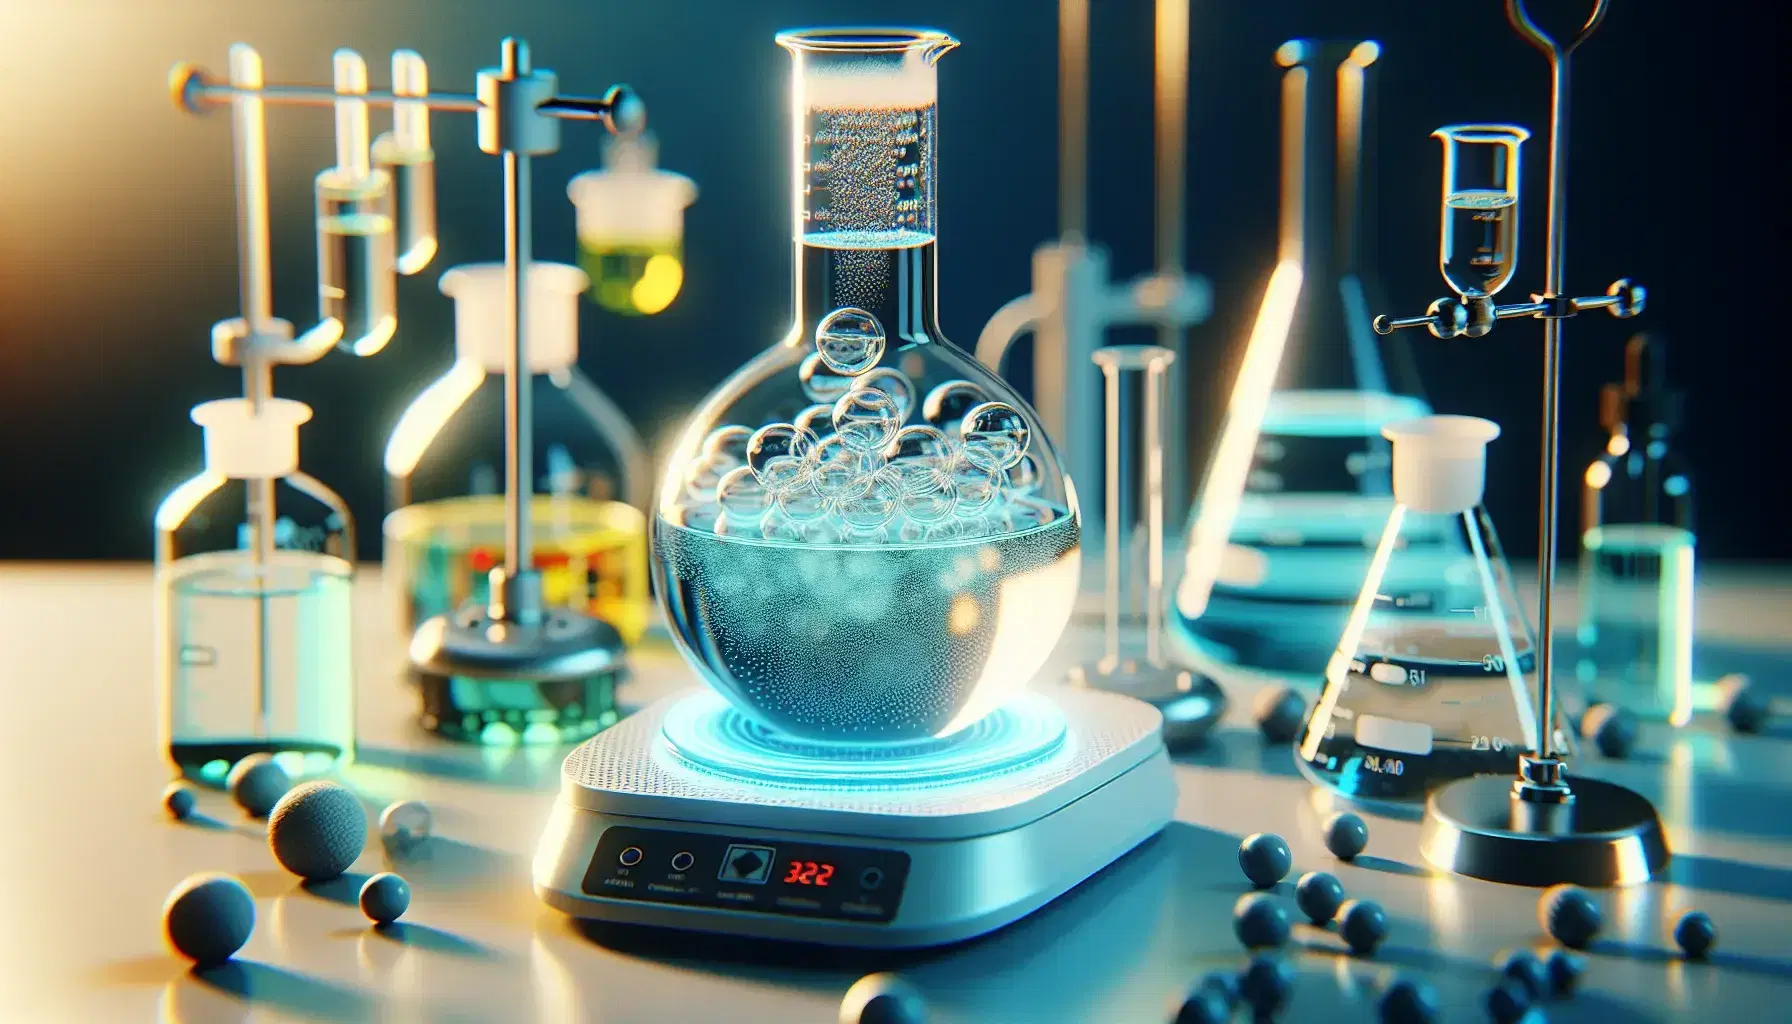 Primer plano de un laboratorio químico con matraz Erlenmeyer sobre placa calefactora y líquidos de colores en instrumentos de vidrio, reflejando la luz en un ambiente científico.